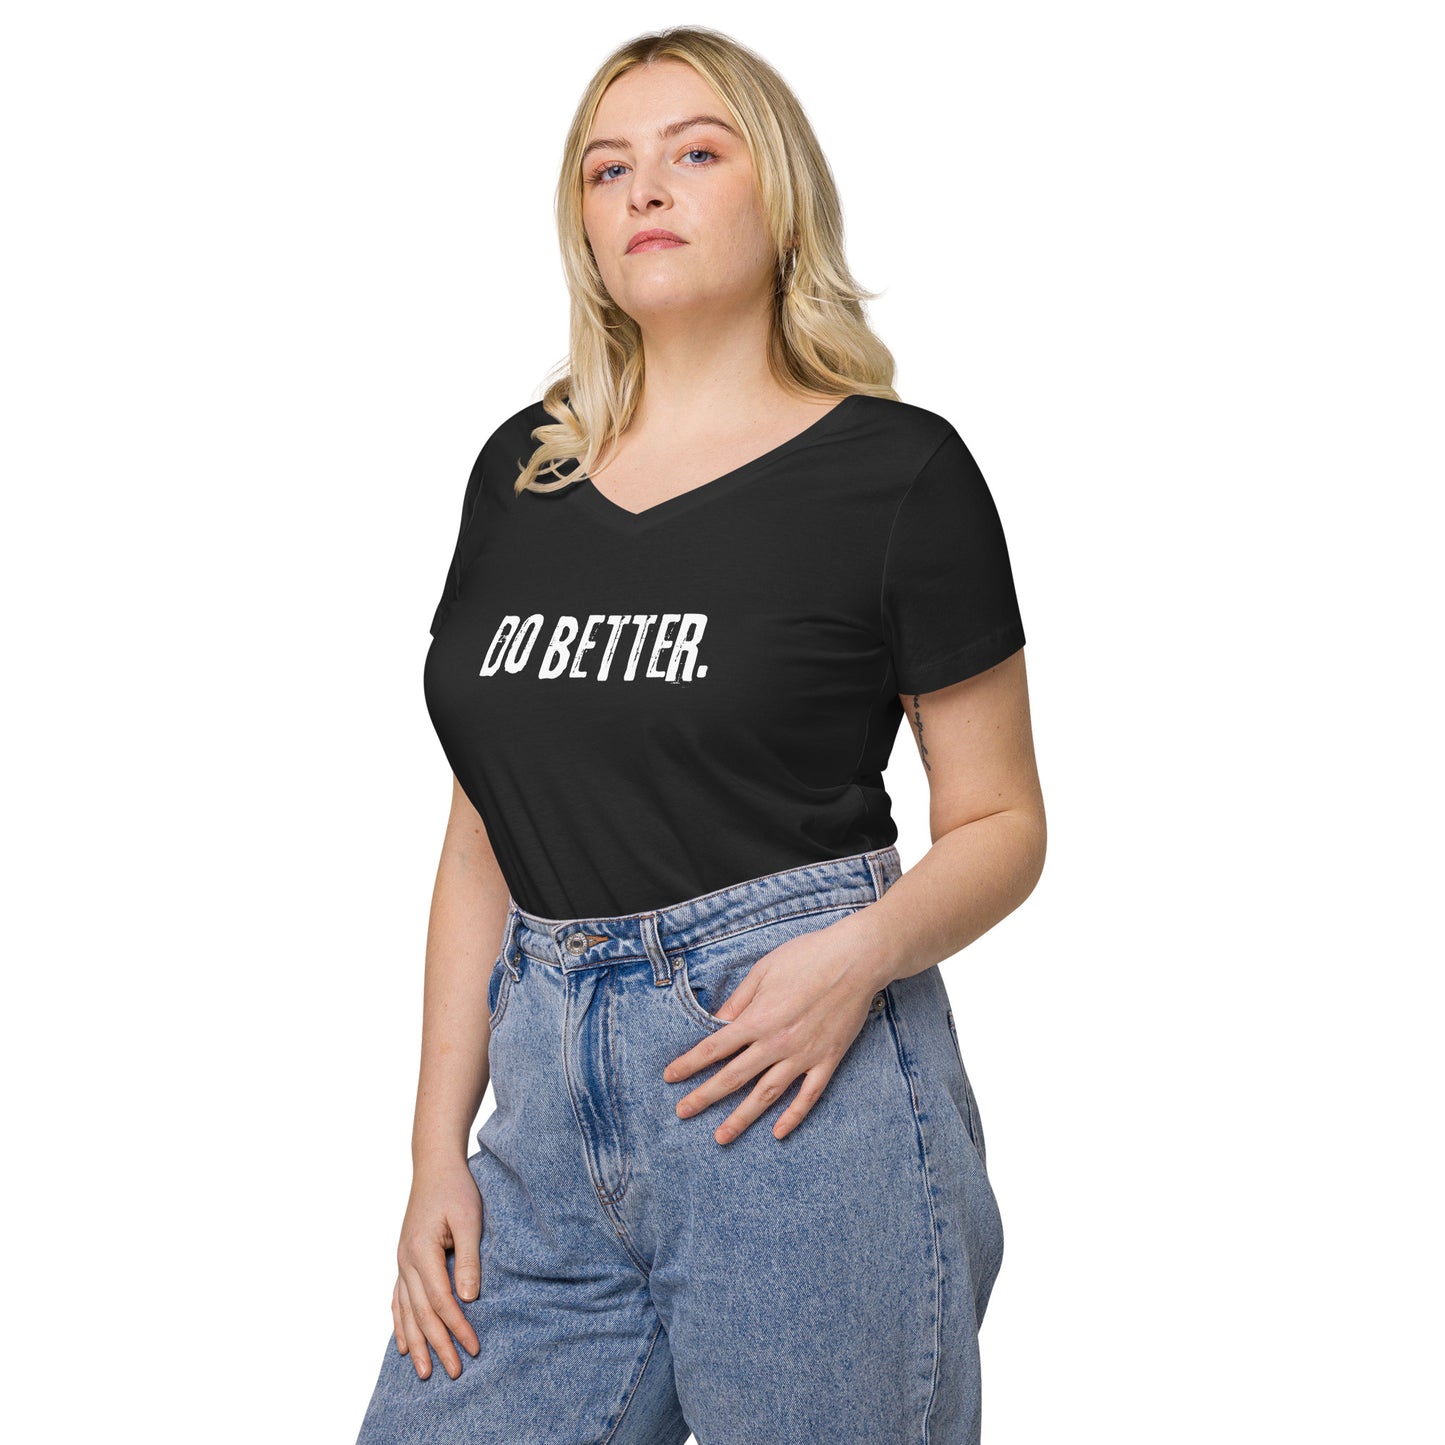 Do Better - Women’s fitted v-neck t-shirt